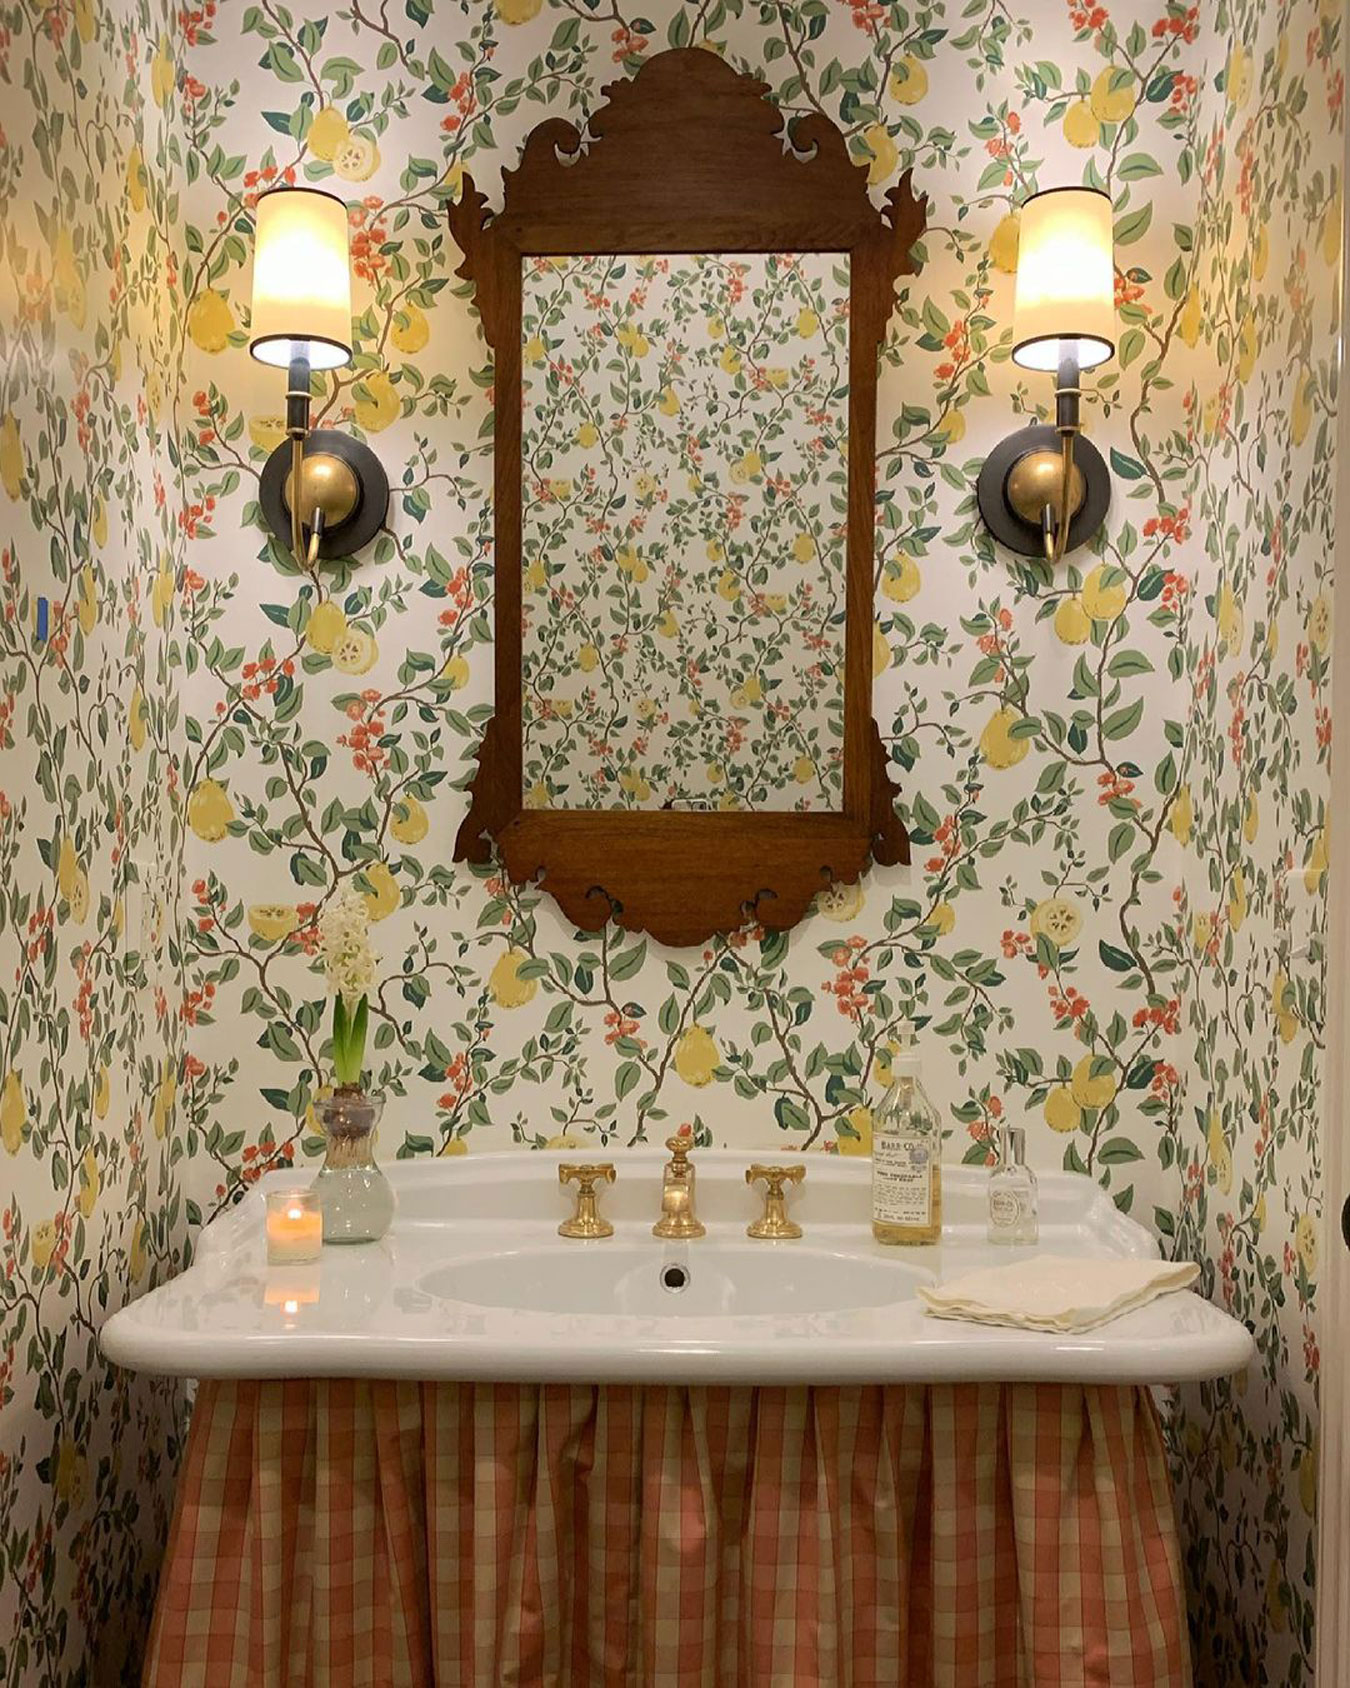 Grandmillennial Decor Ideas  Granny Chic Modern  Traditional Decor   Trendy bathroom Bathroom interior Bathroom wall decor